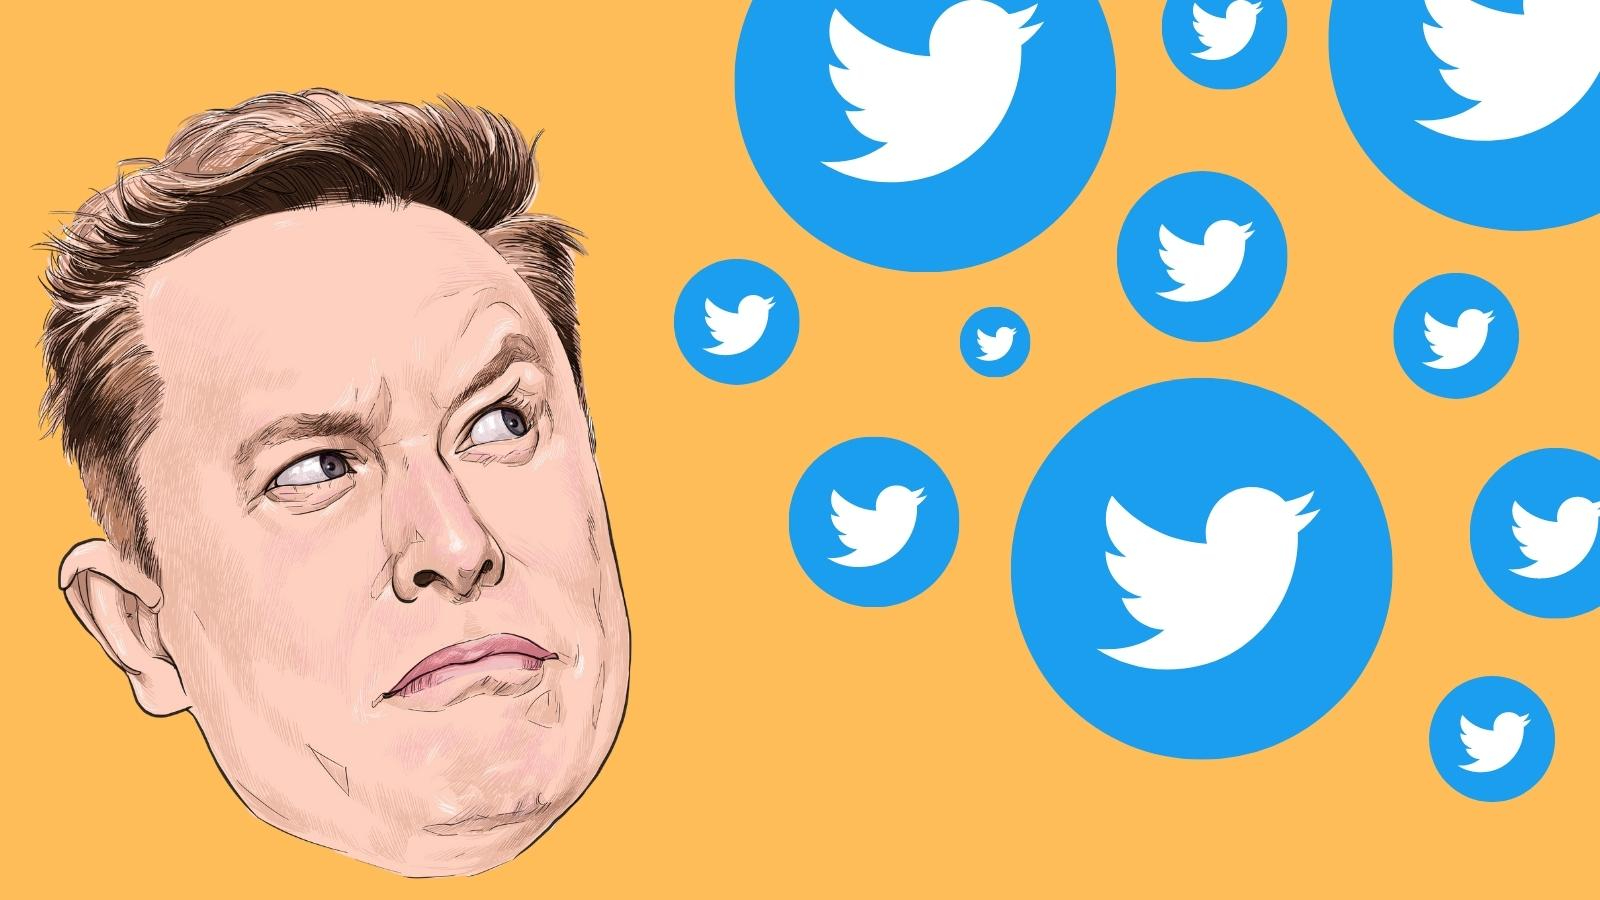 Живой блог: хаос в Твиттере — Илон Маск откладывает Blue Check